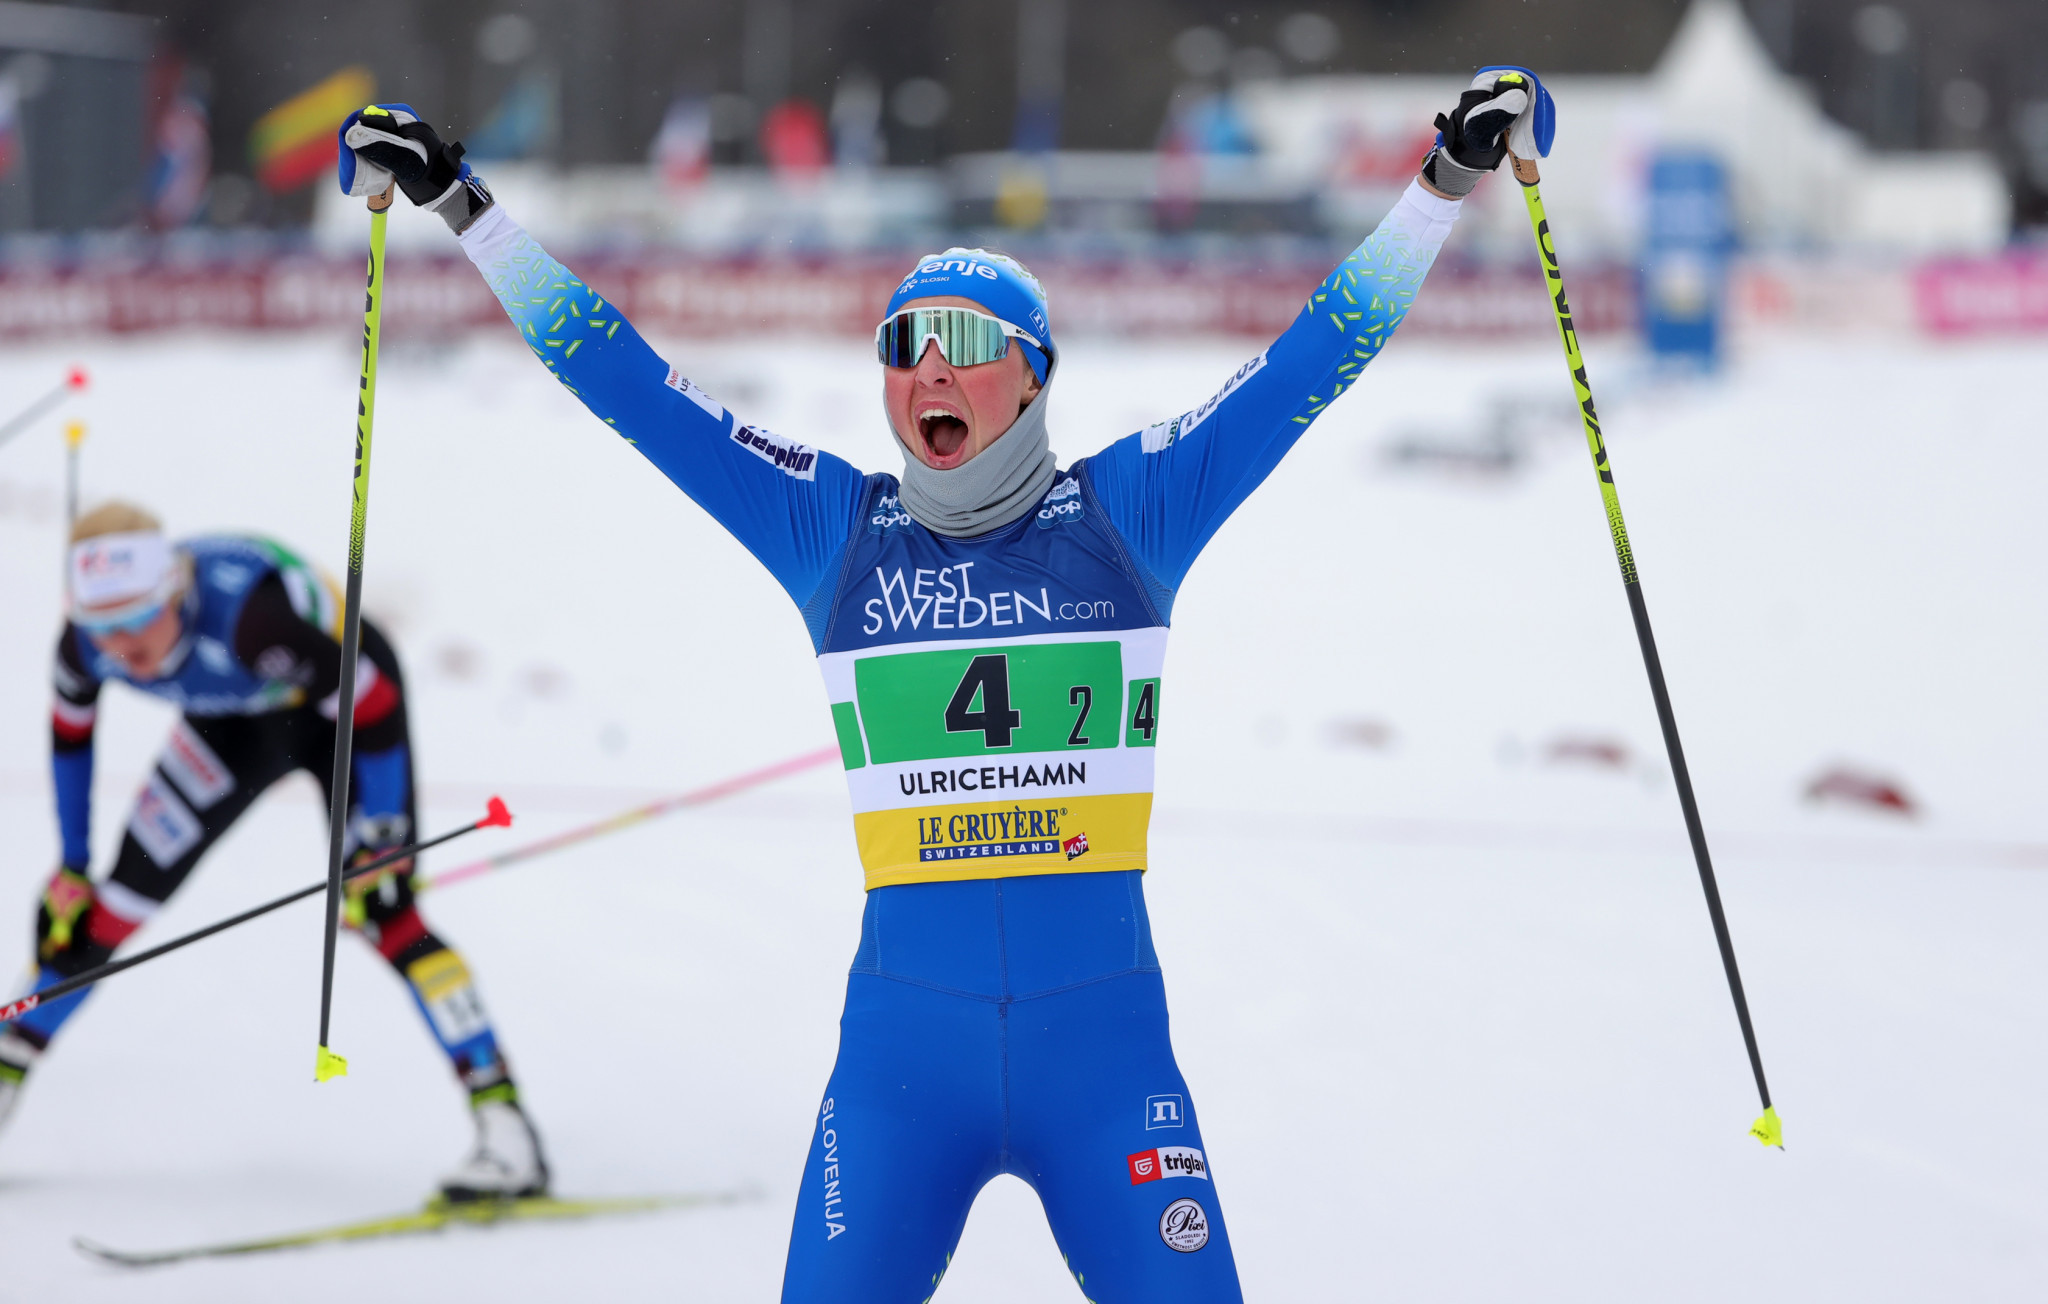 Italia e Slovenia rivendicano i titoli sprint alla Coppa del Mondo di sci di fondo in Svezia